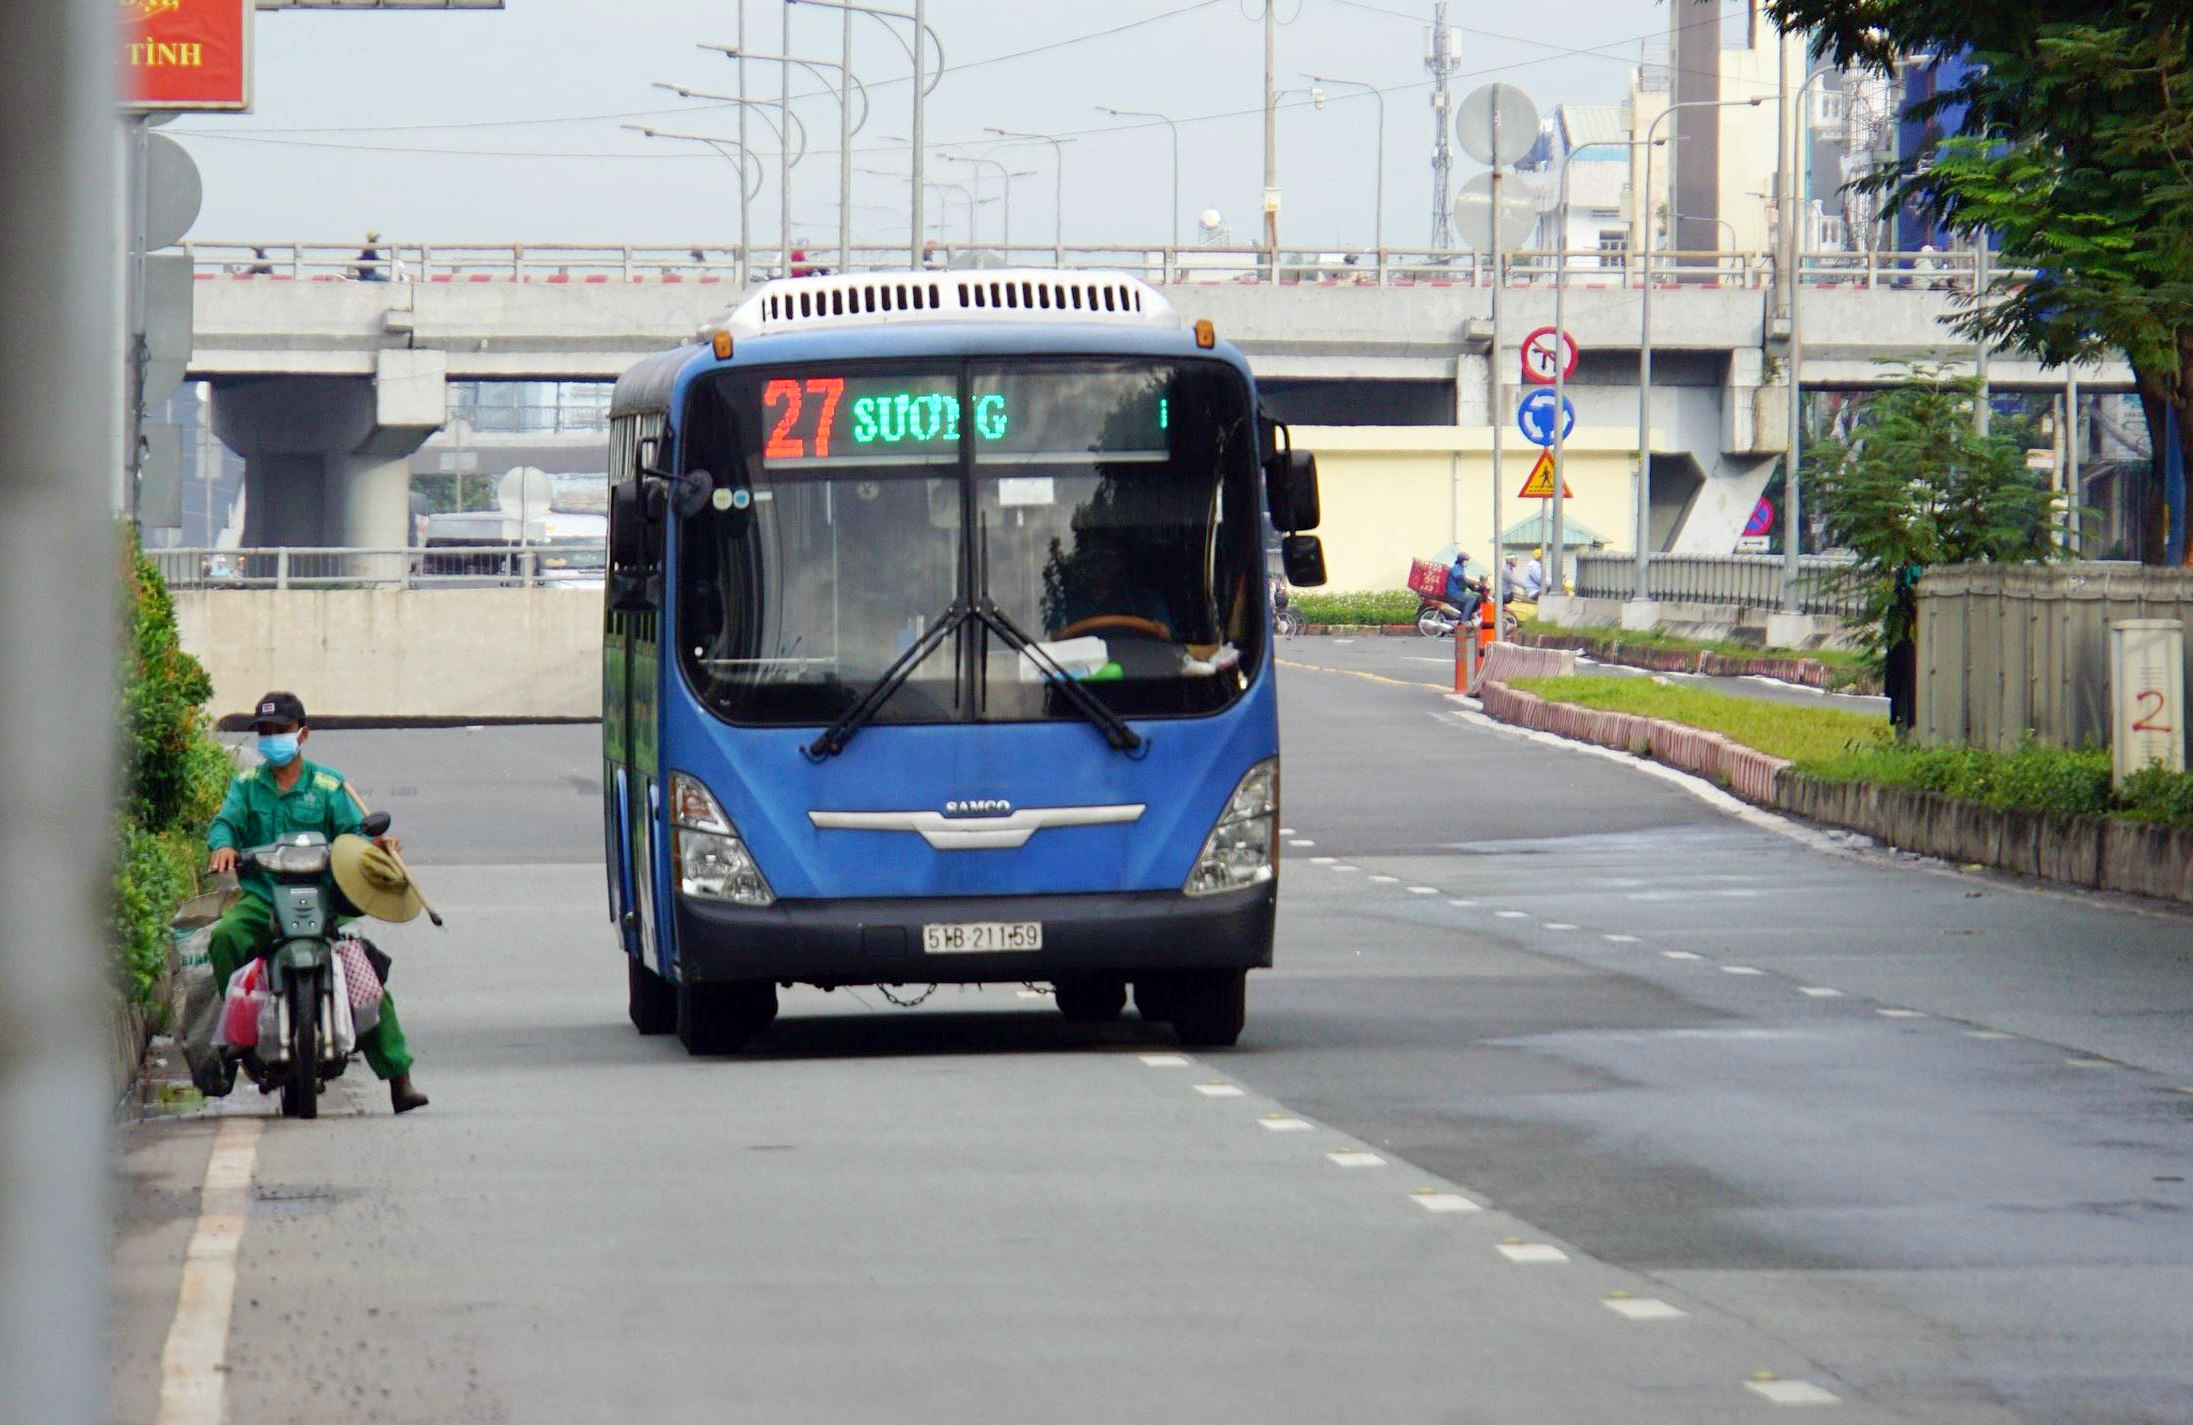 Ảnh: Xe buýt xuất hiện trên phố Sài Gòn đón khách sau 4 tháng nghỉ ...